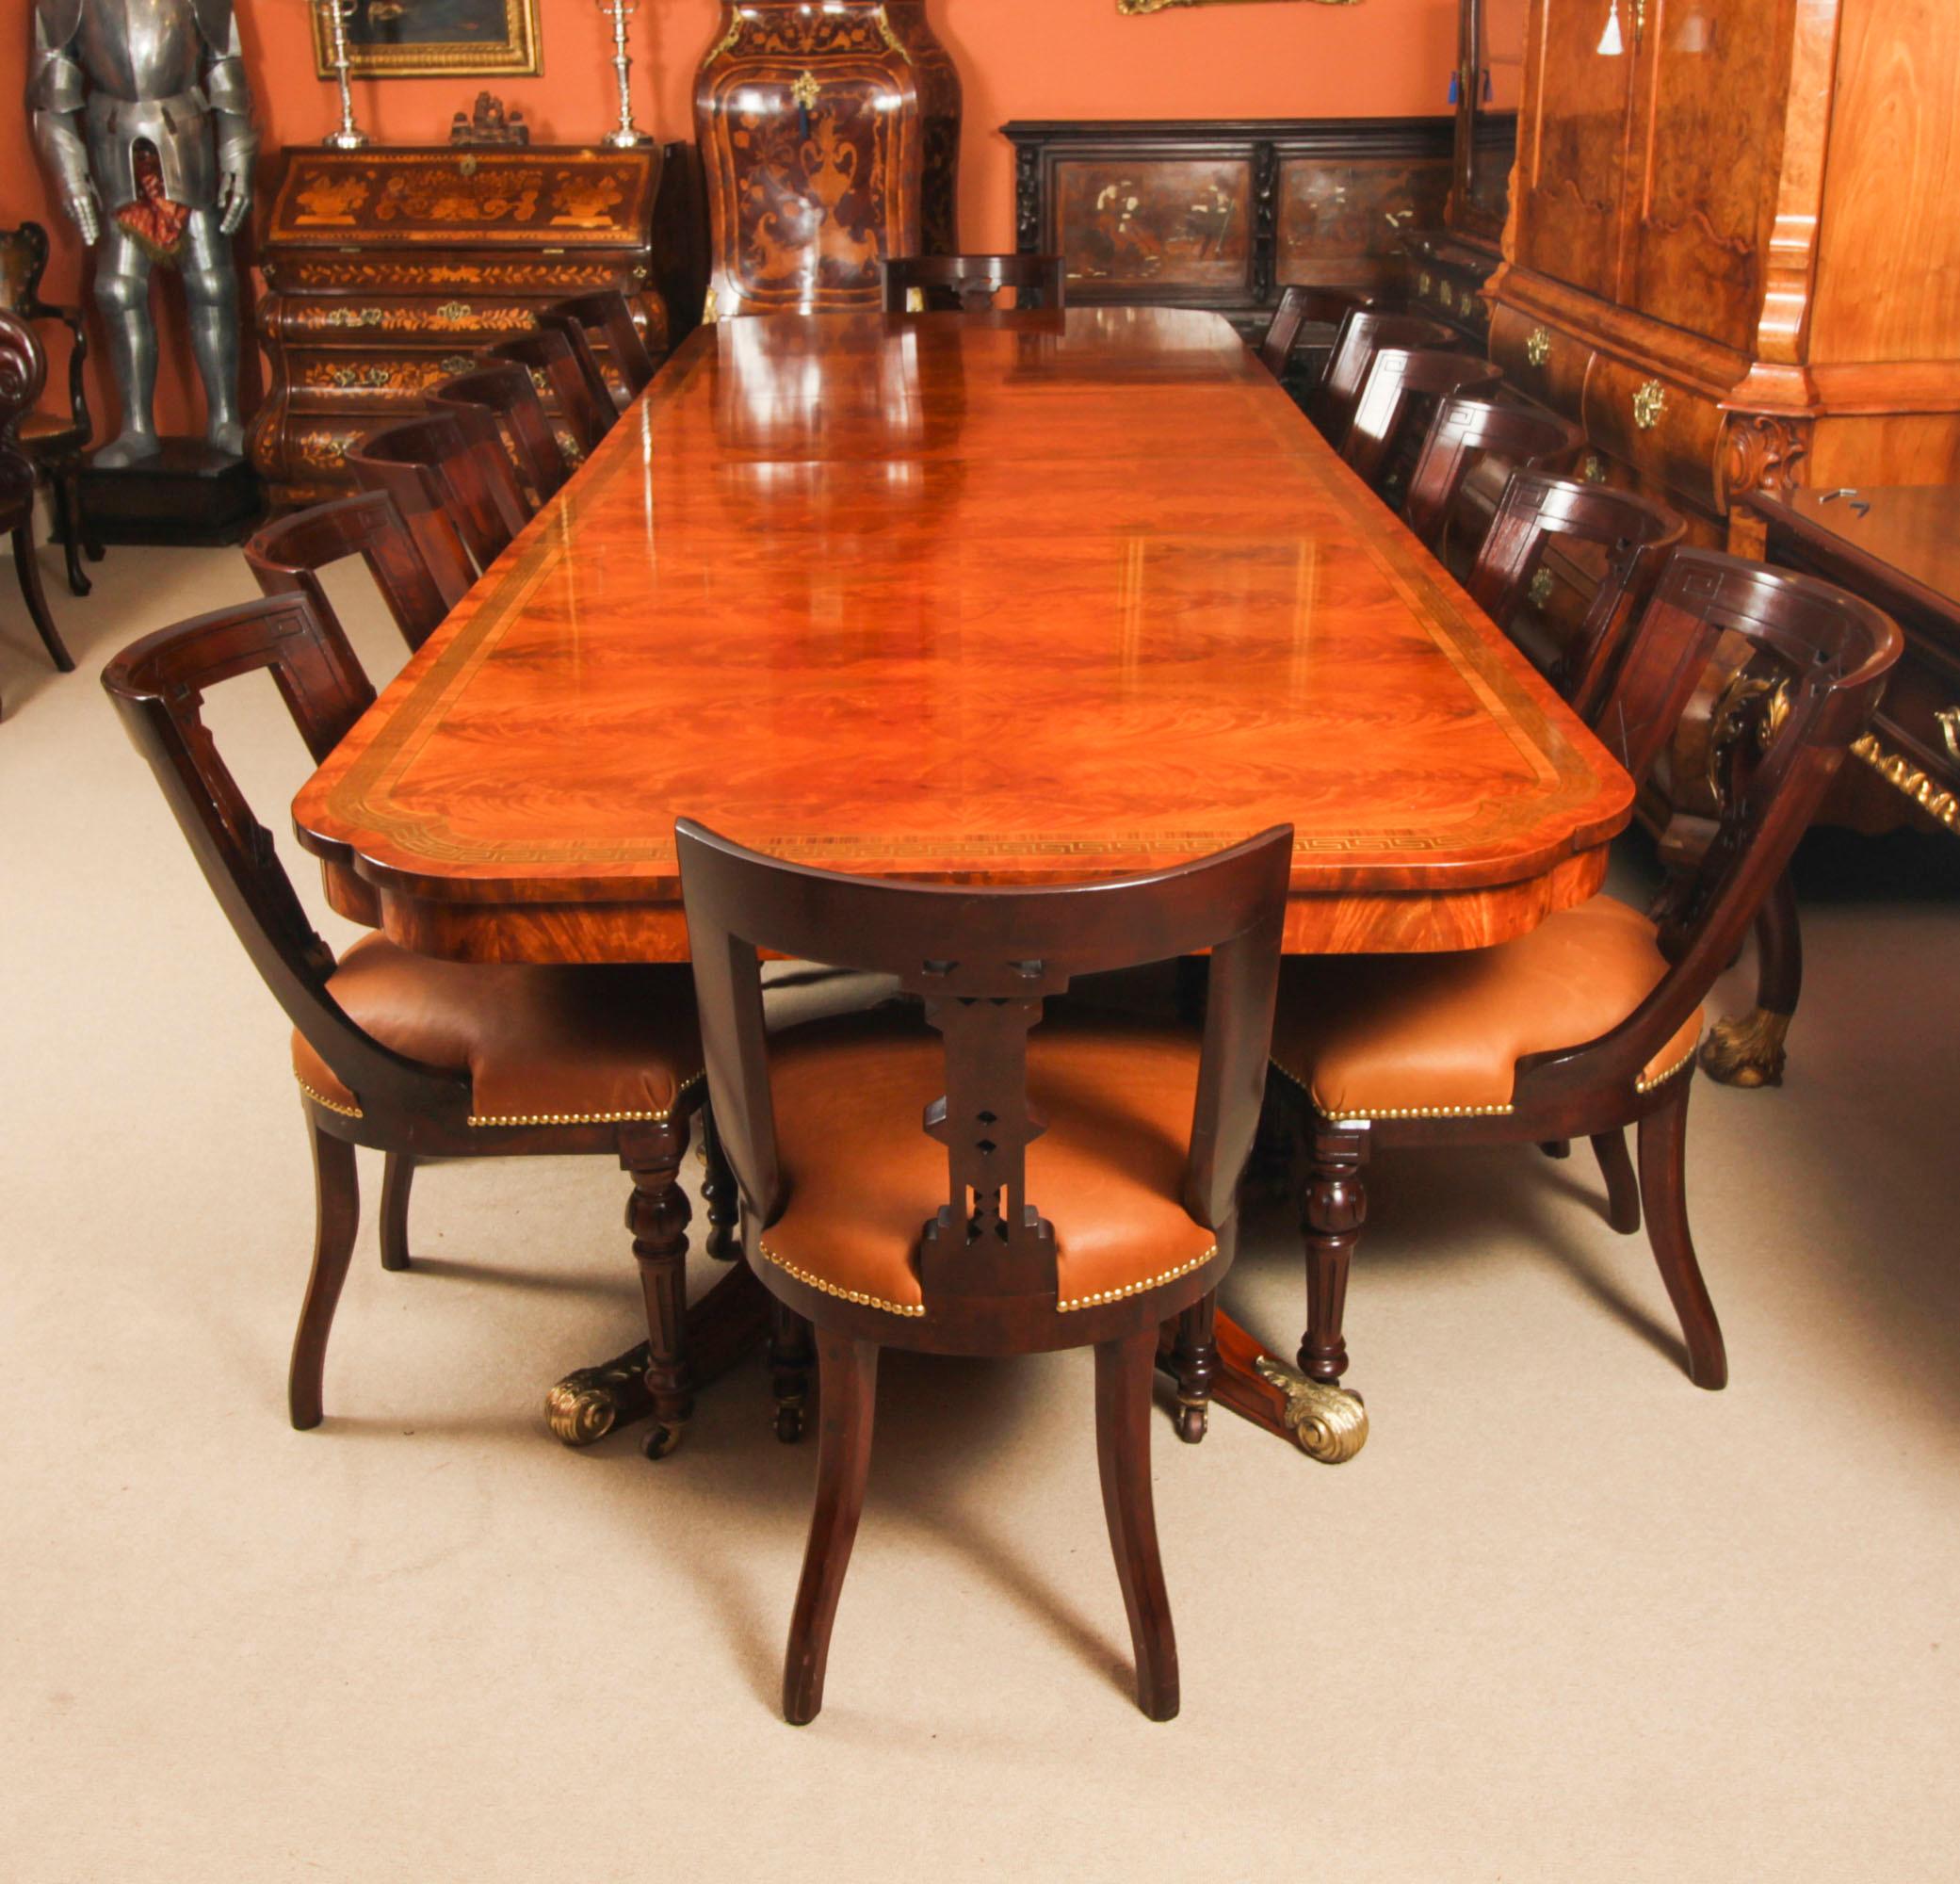 Il s'agit d'un fabuleux ensemble de salle à manger Vintage Regency Revival comprenant une table de salle à manger, datant du milieu du 20e siècle, et un ensemble de quatorze chaises de salle à manger athéniennes antiques, datant de 1870.

Cette